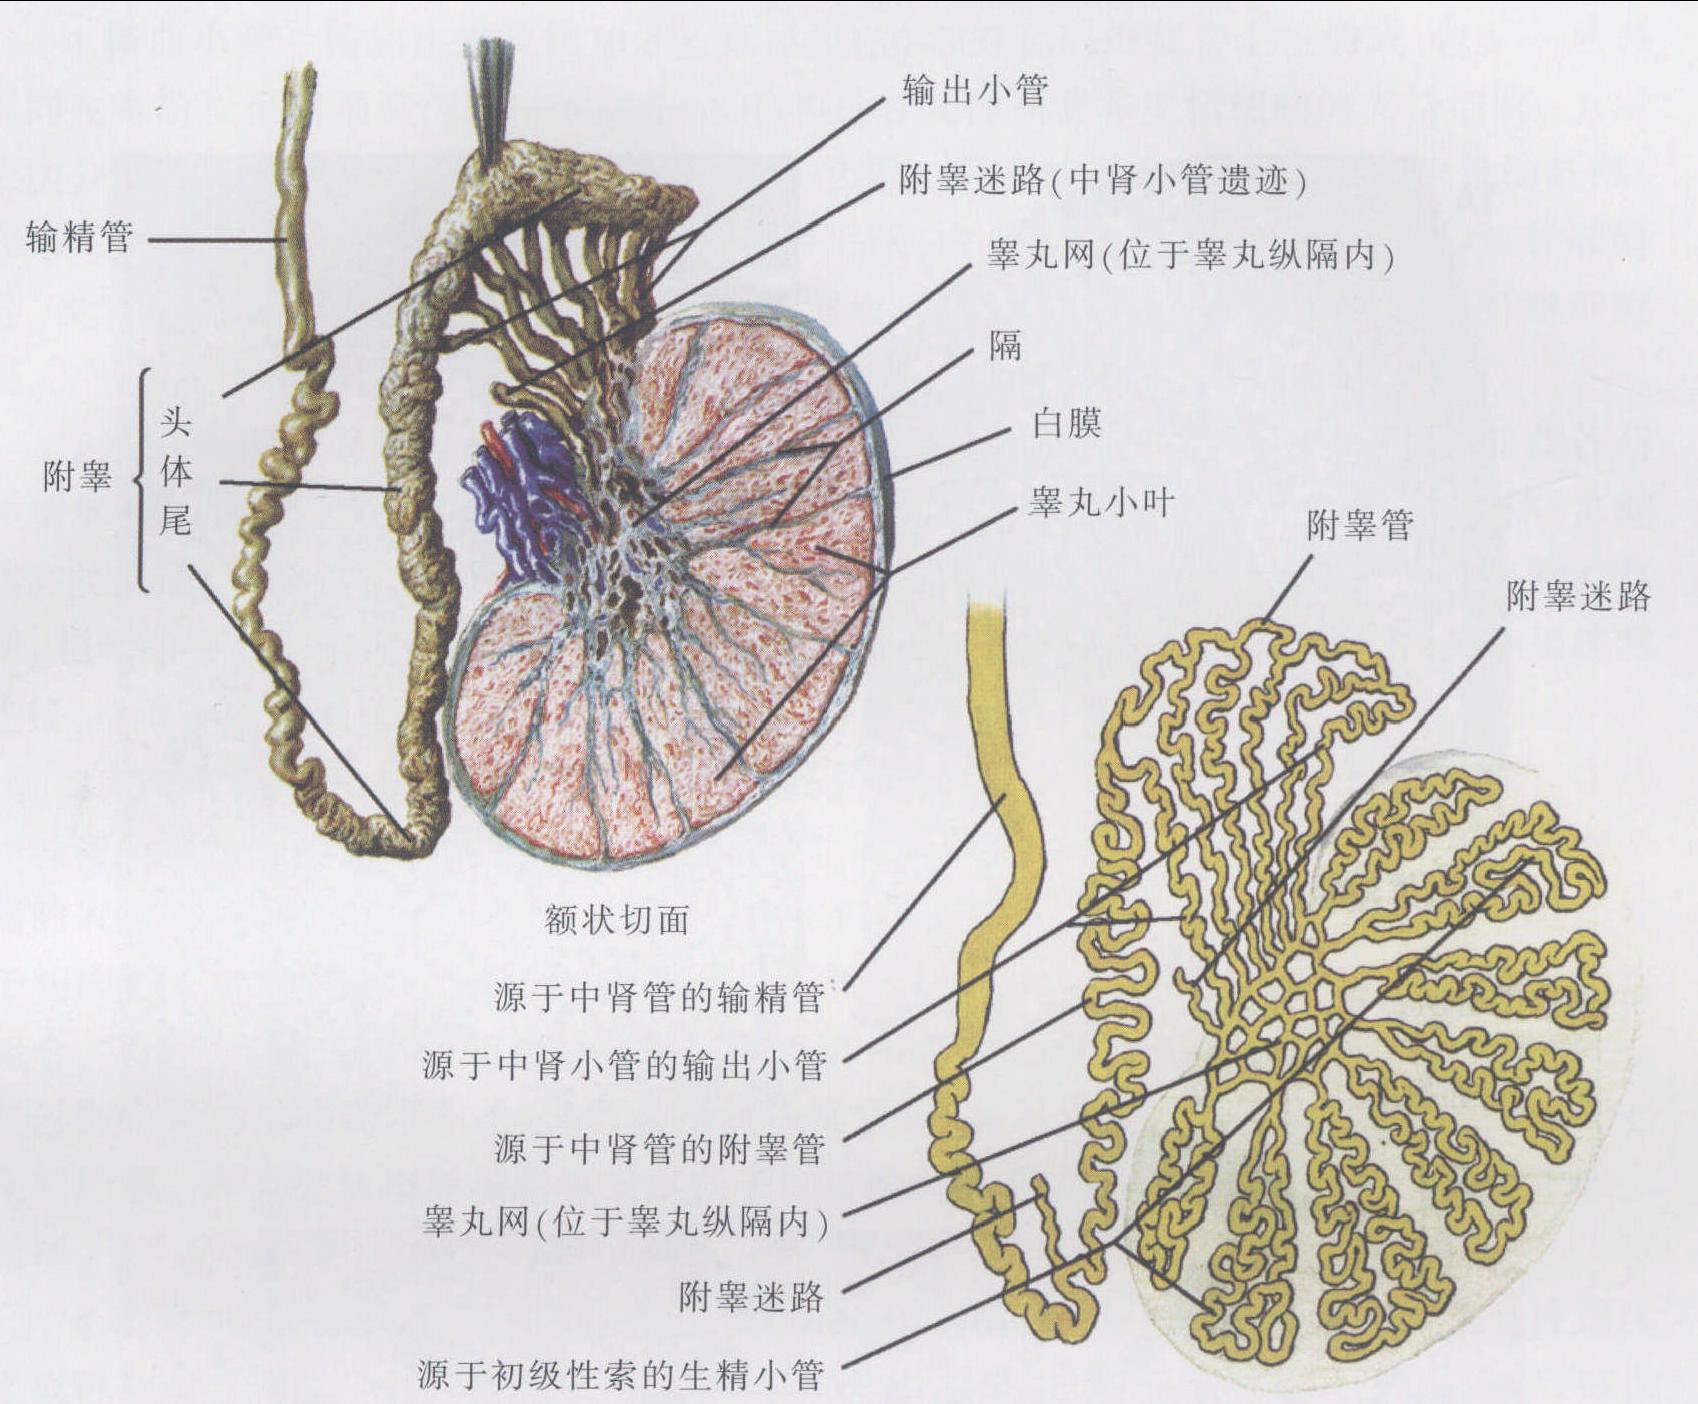 230.睾丸、附睾及其被膜 (外侧面观)-基础医学-医学